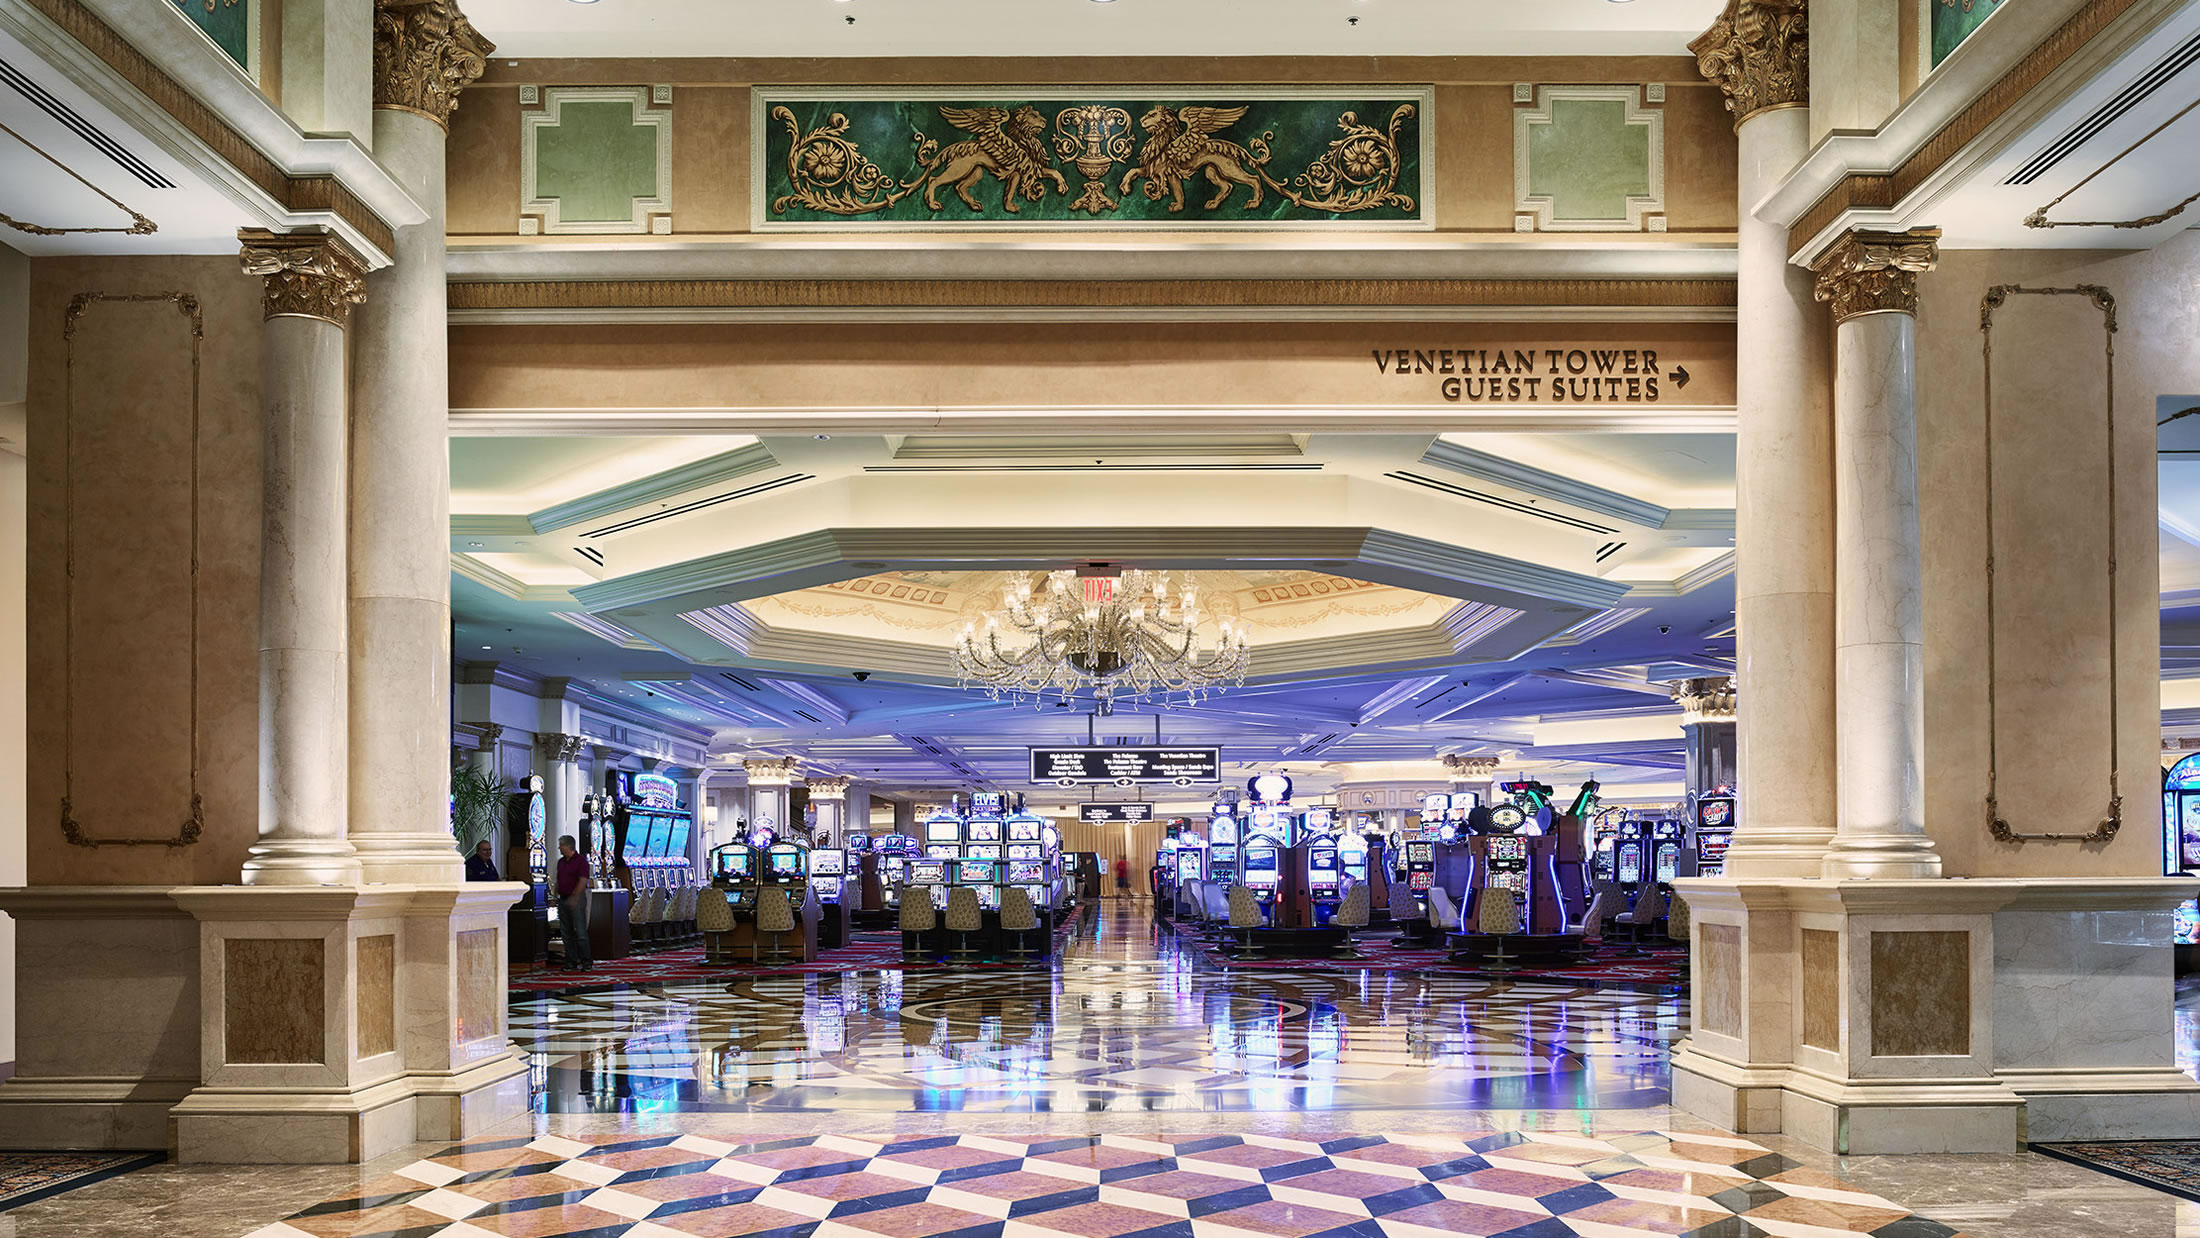 Venetian Hotel Casino Las Vegas Floor Tour 